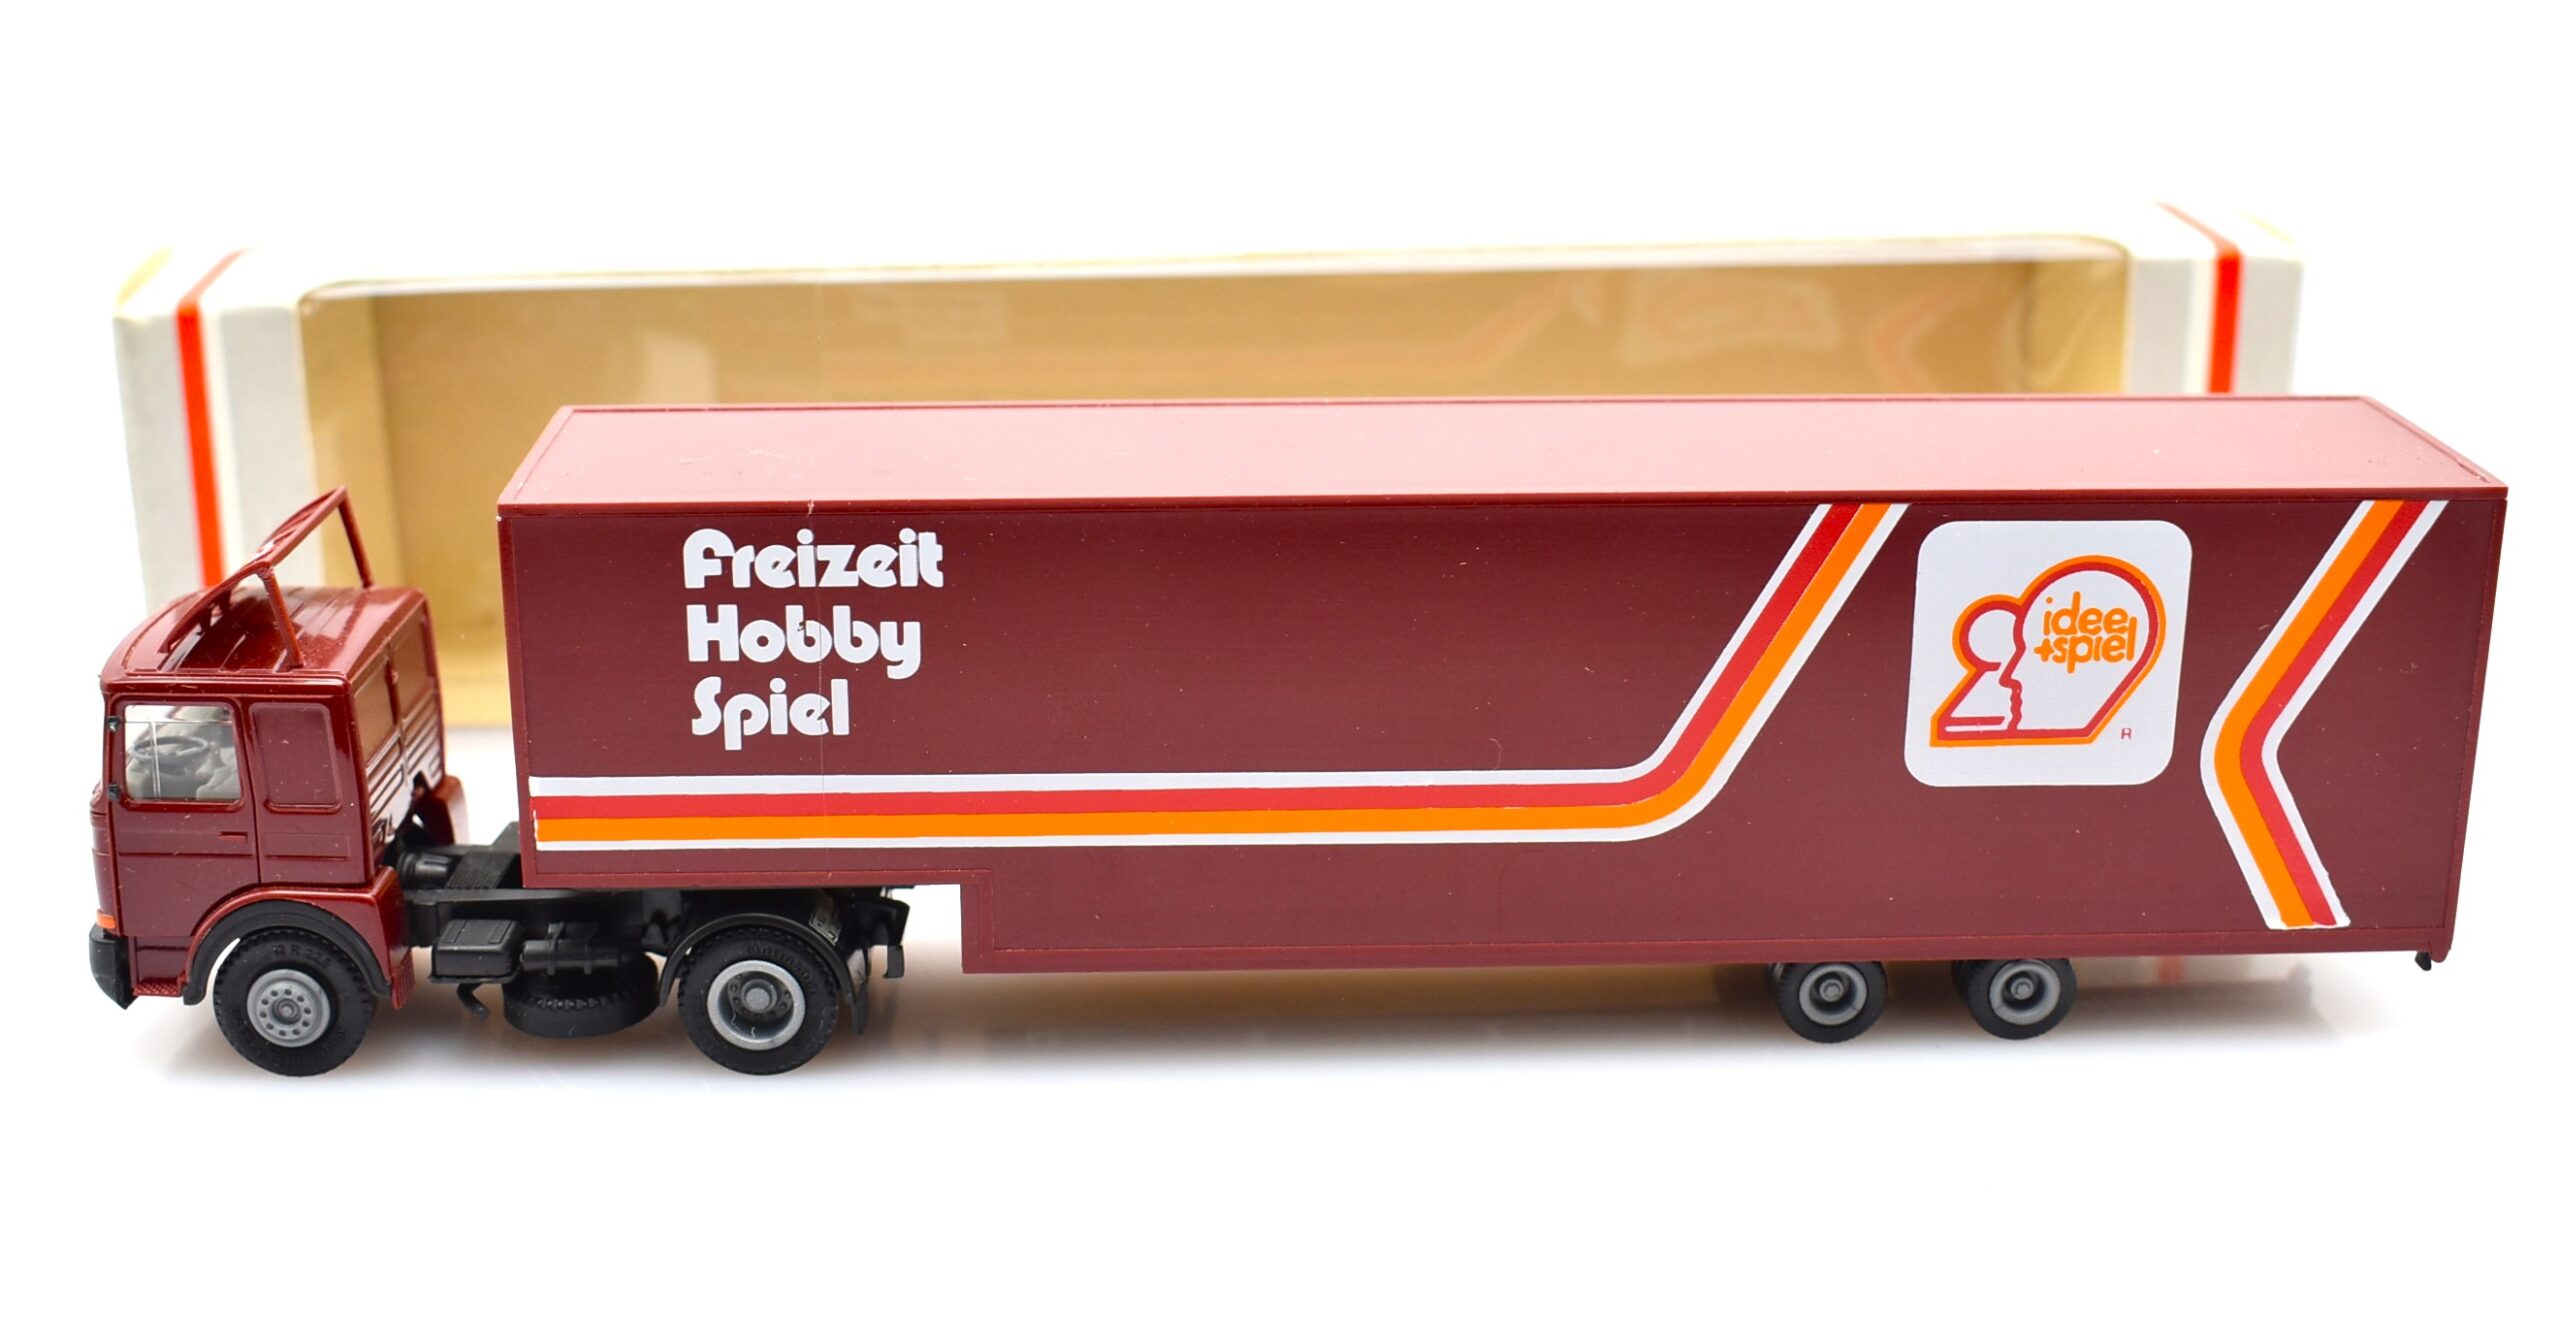 albedo model truck 1:87 scale truck MAN LKW Freizeit Hobby Spiel vehicles